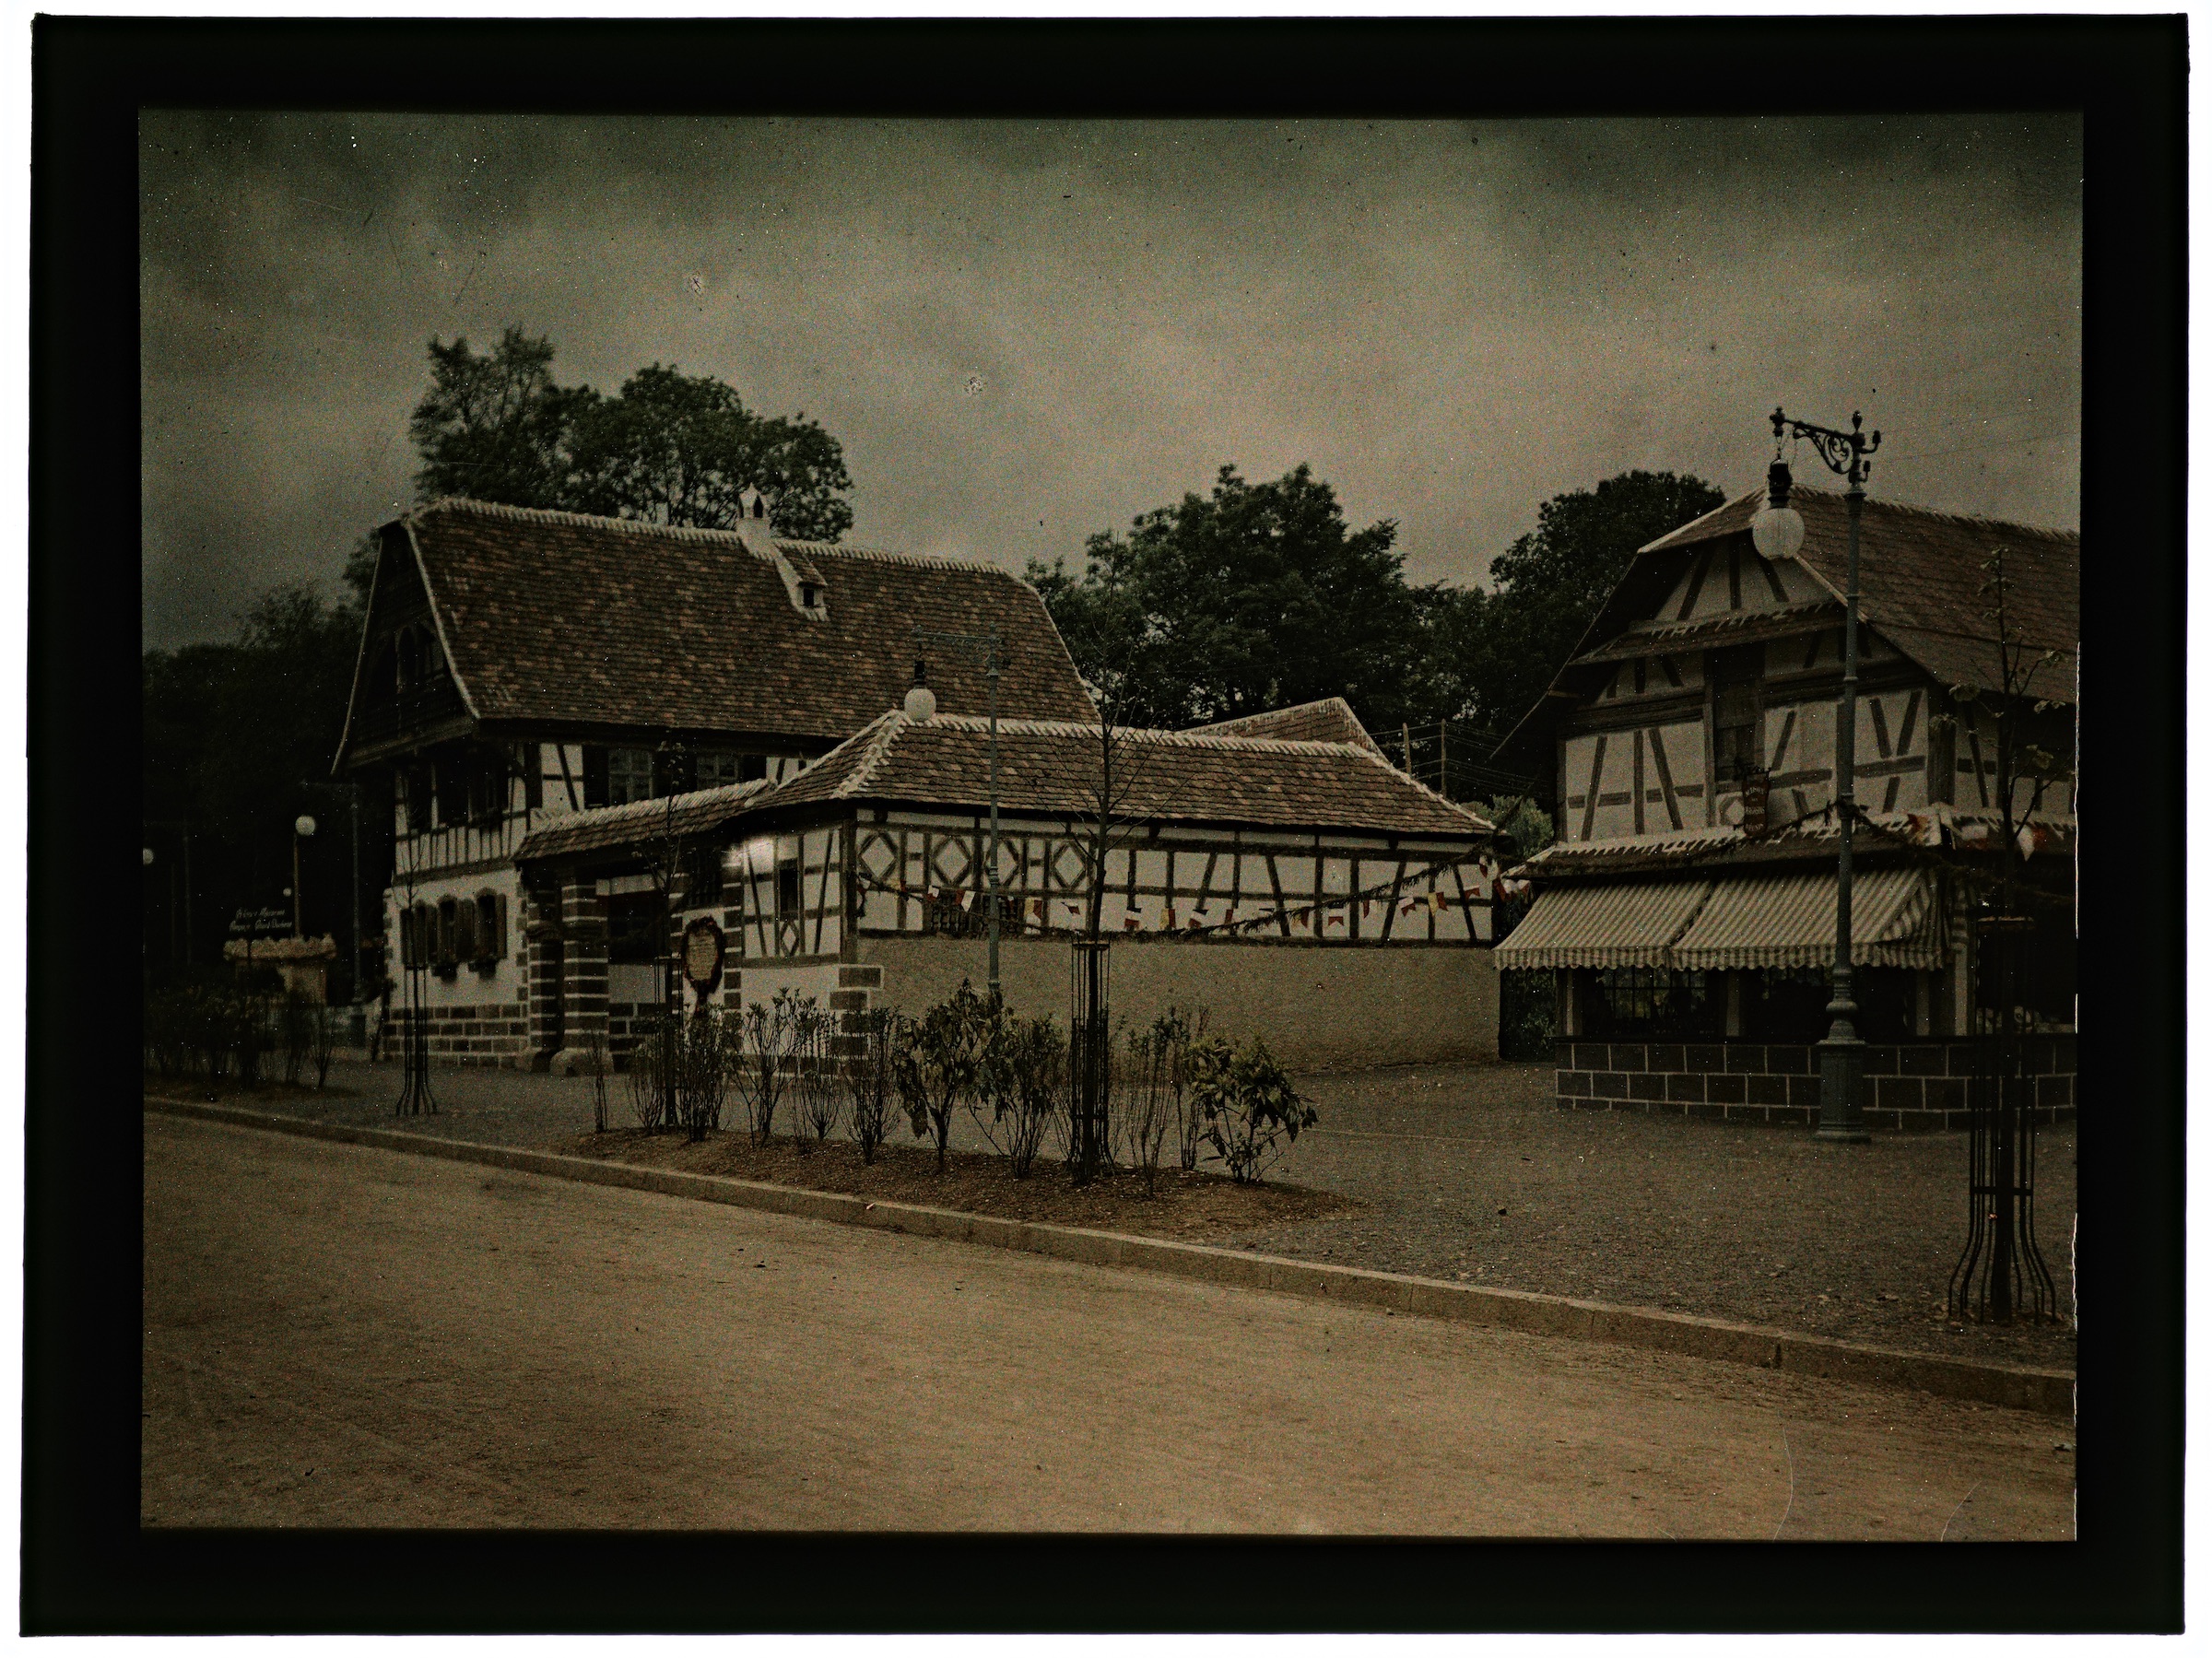 L'exposition internationale de 1909 à Nancy